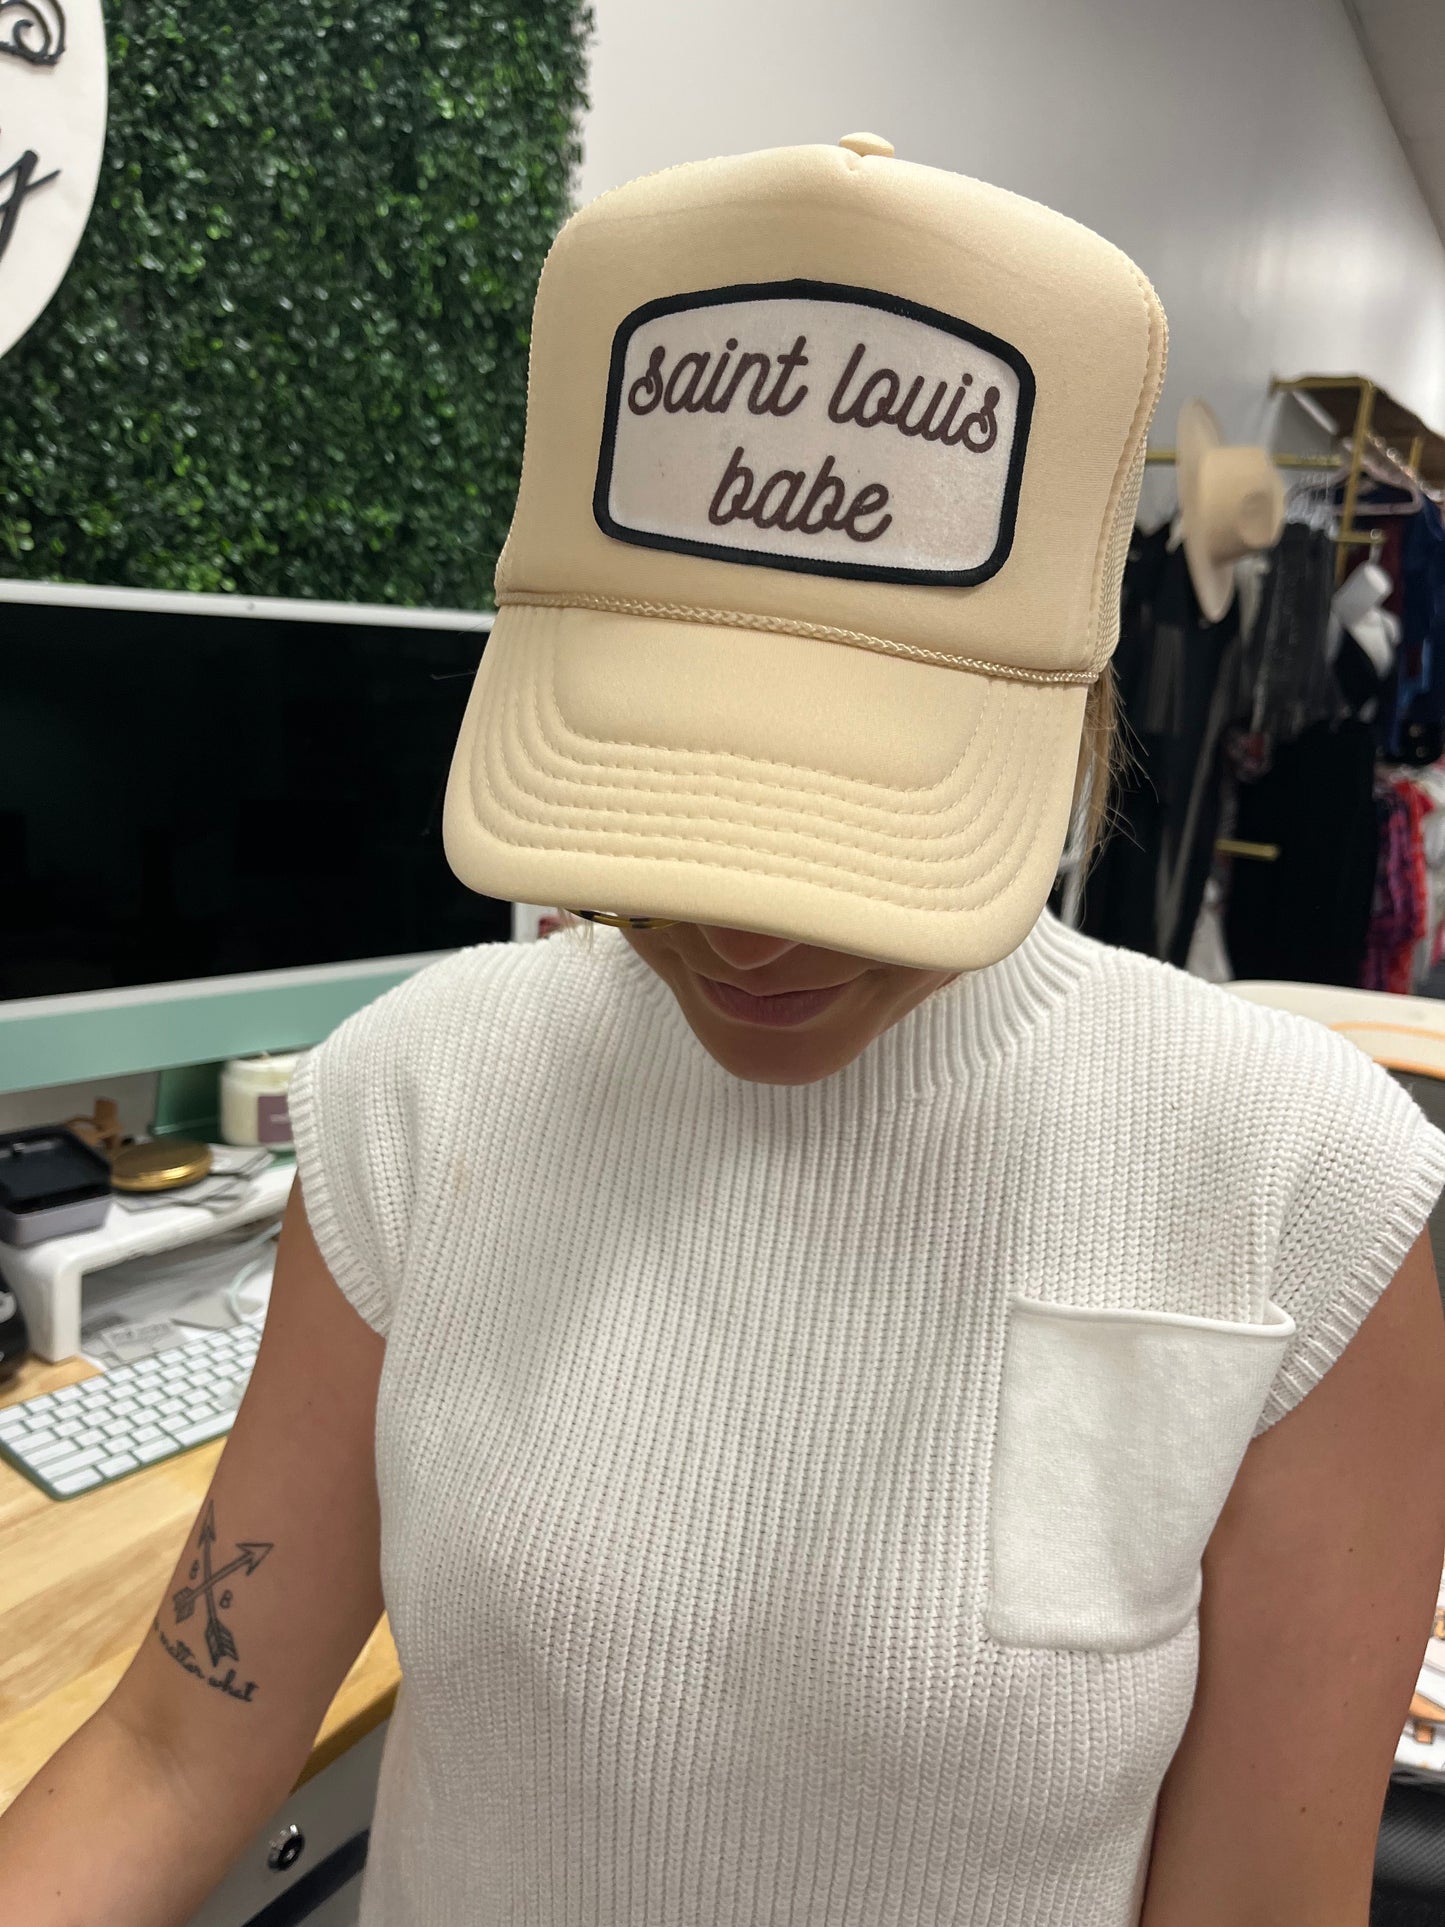 Saint Louis Babe Trucker hat